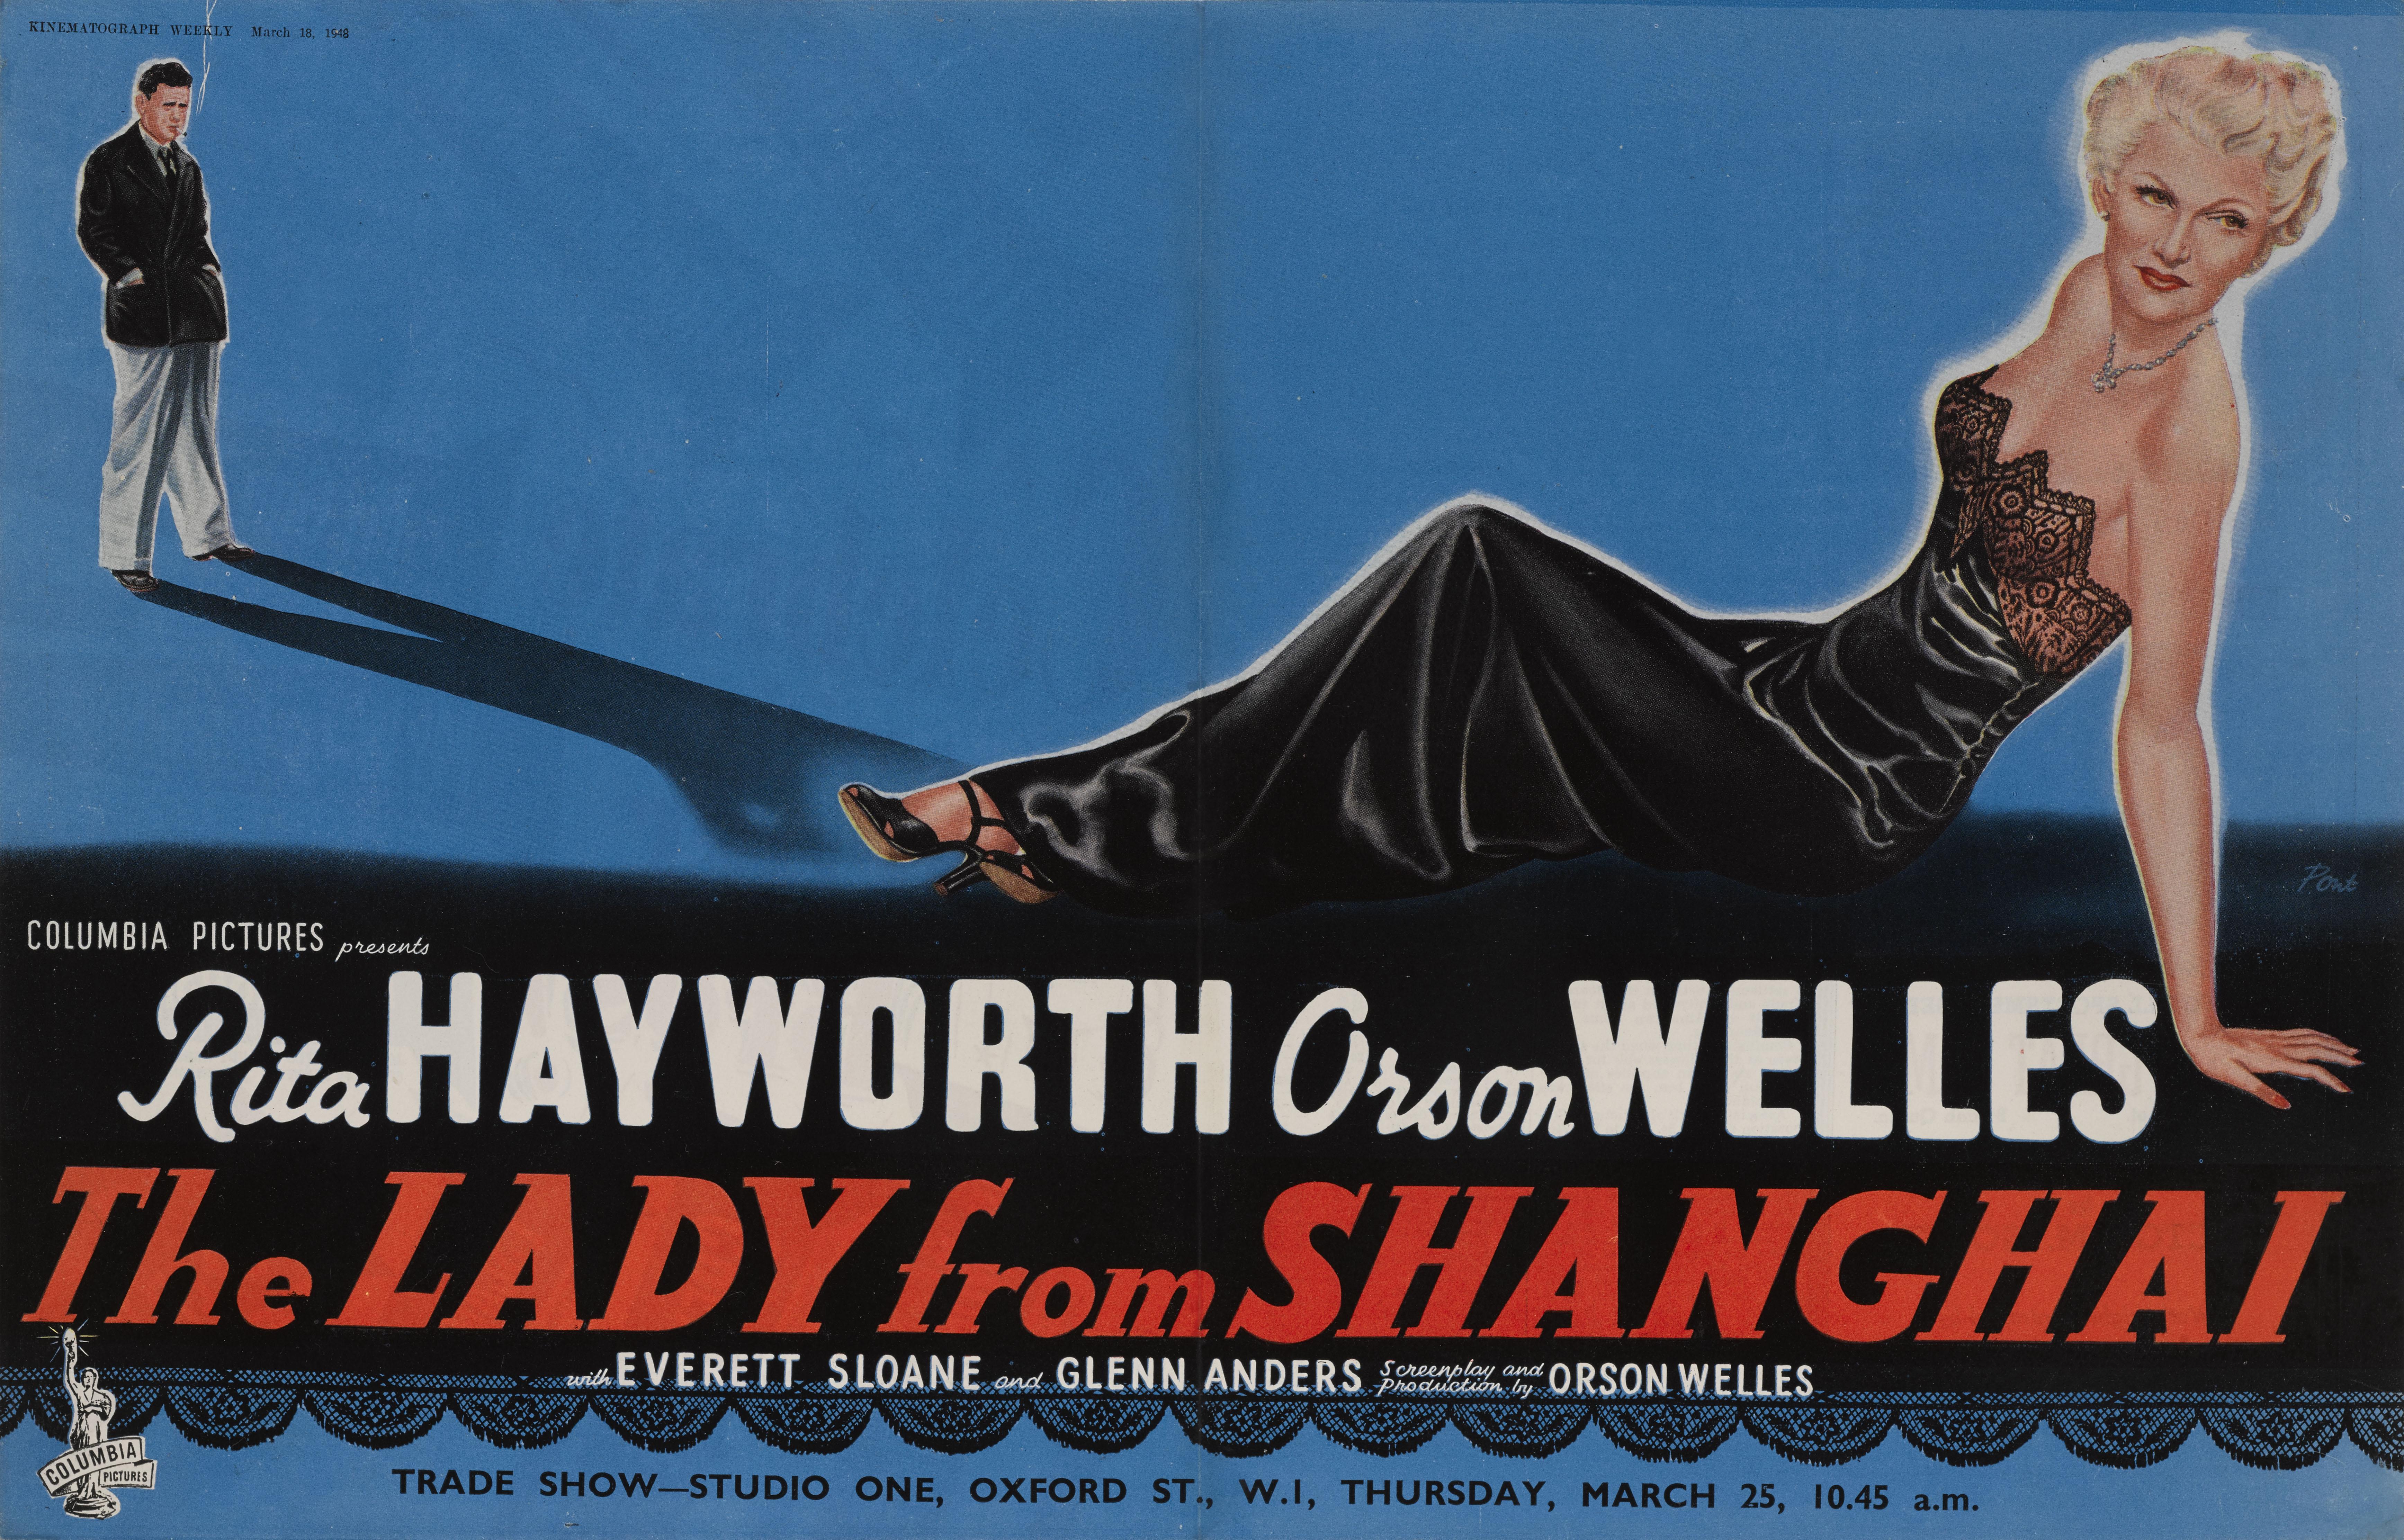 Original-Handelsanzeige aus Kinematograph Weekly 18. März 1948 Dieser Film Noir The Lady from Shanghai spielte Rita Hayworth, Orson Welles und wurde von Orson Welles geleitet.
Das Stück ist in ausgezeichnetem Zustand, die Farben sind sehr